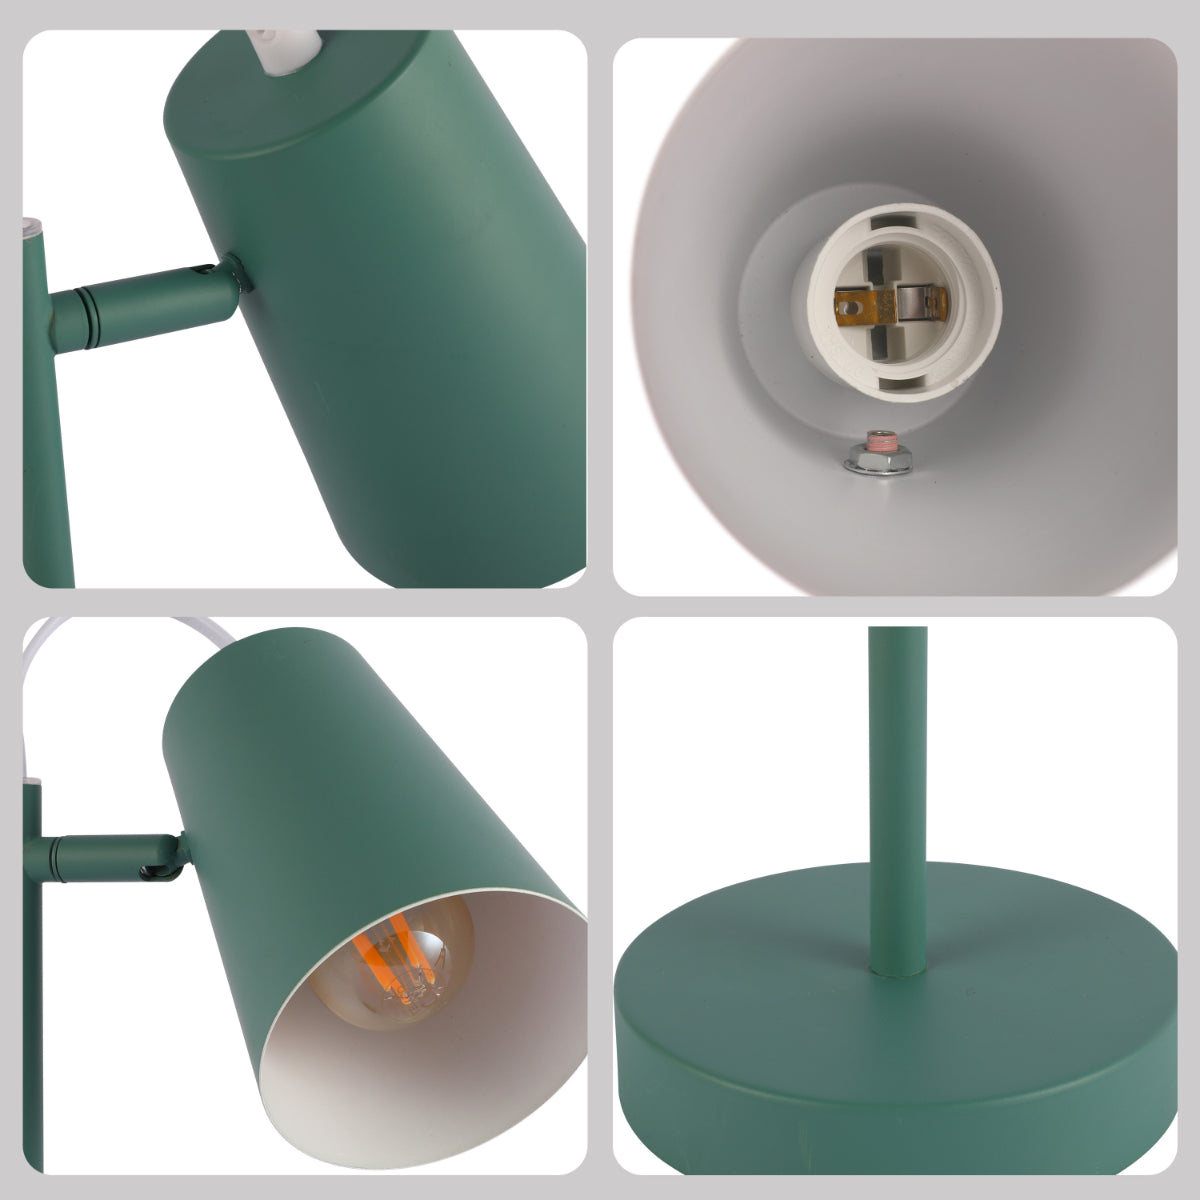 Lighting properties of Sleek Cut Cone Desk Lamp in Vibrant Colors - Modern Elegance 130-03670